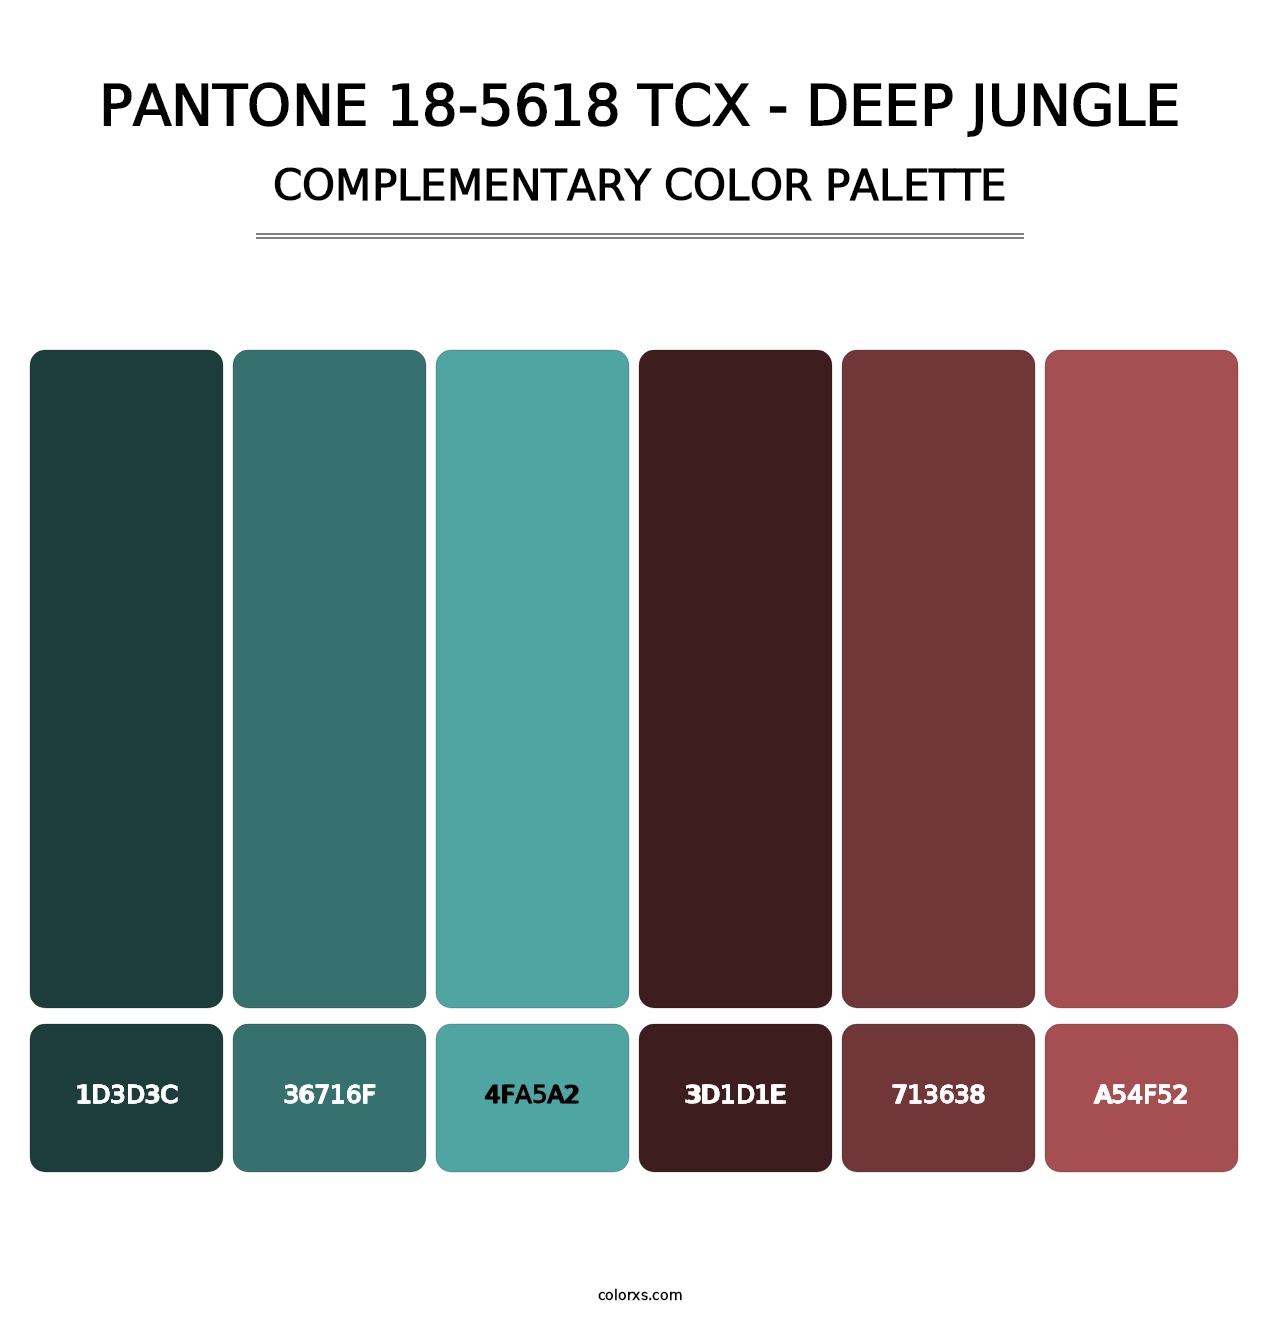 PANTONE 18-5618 TCX - Deep Jungle - Complementary Color Palette